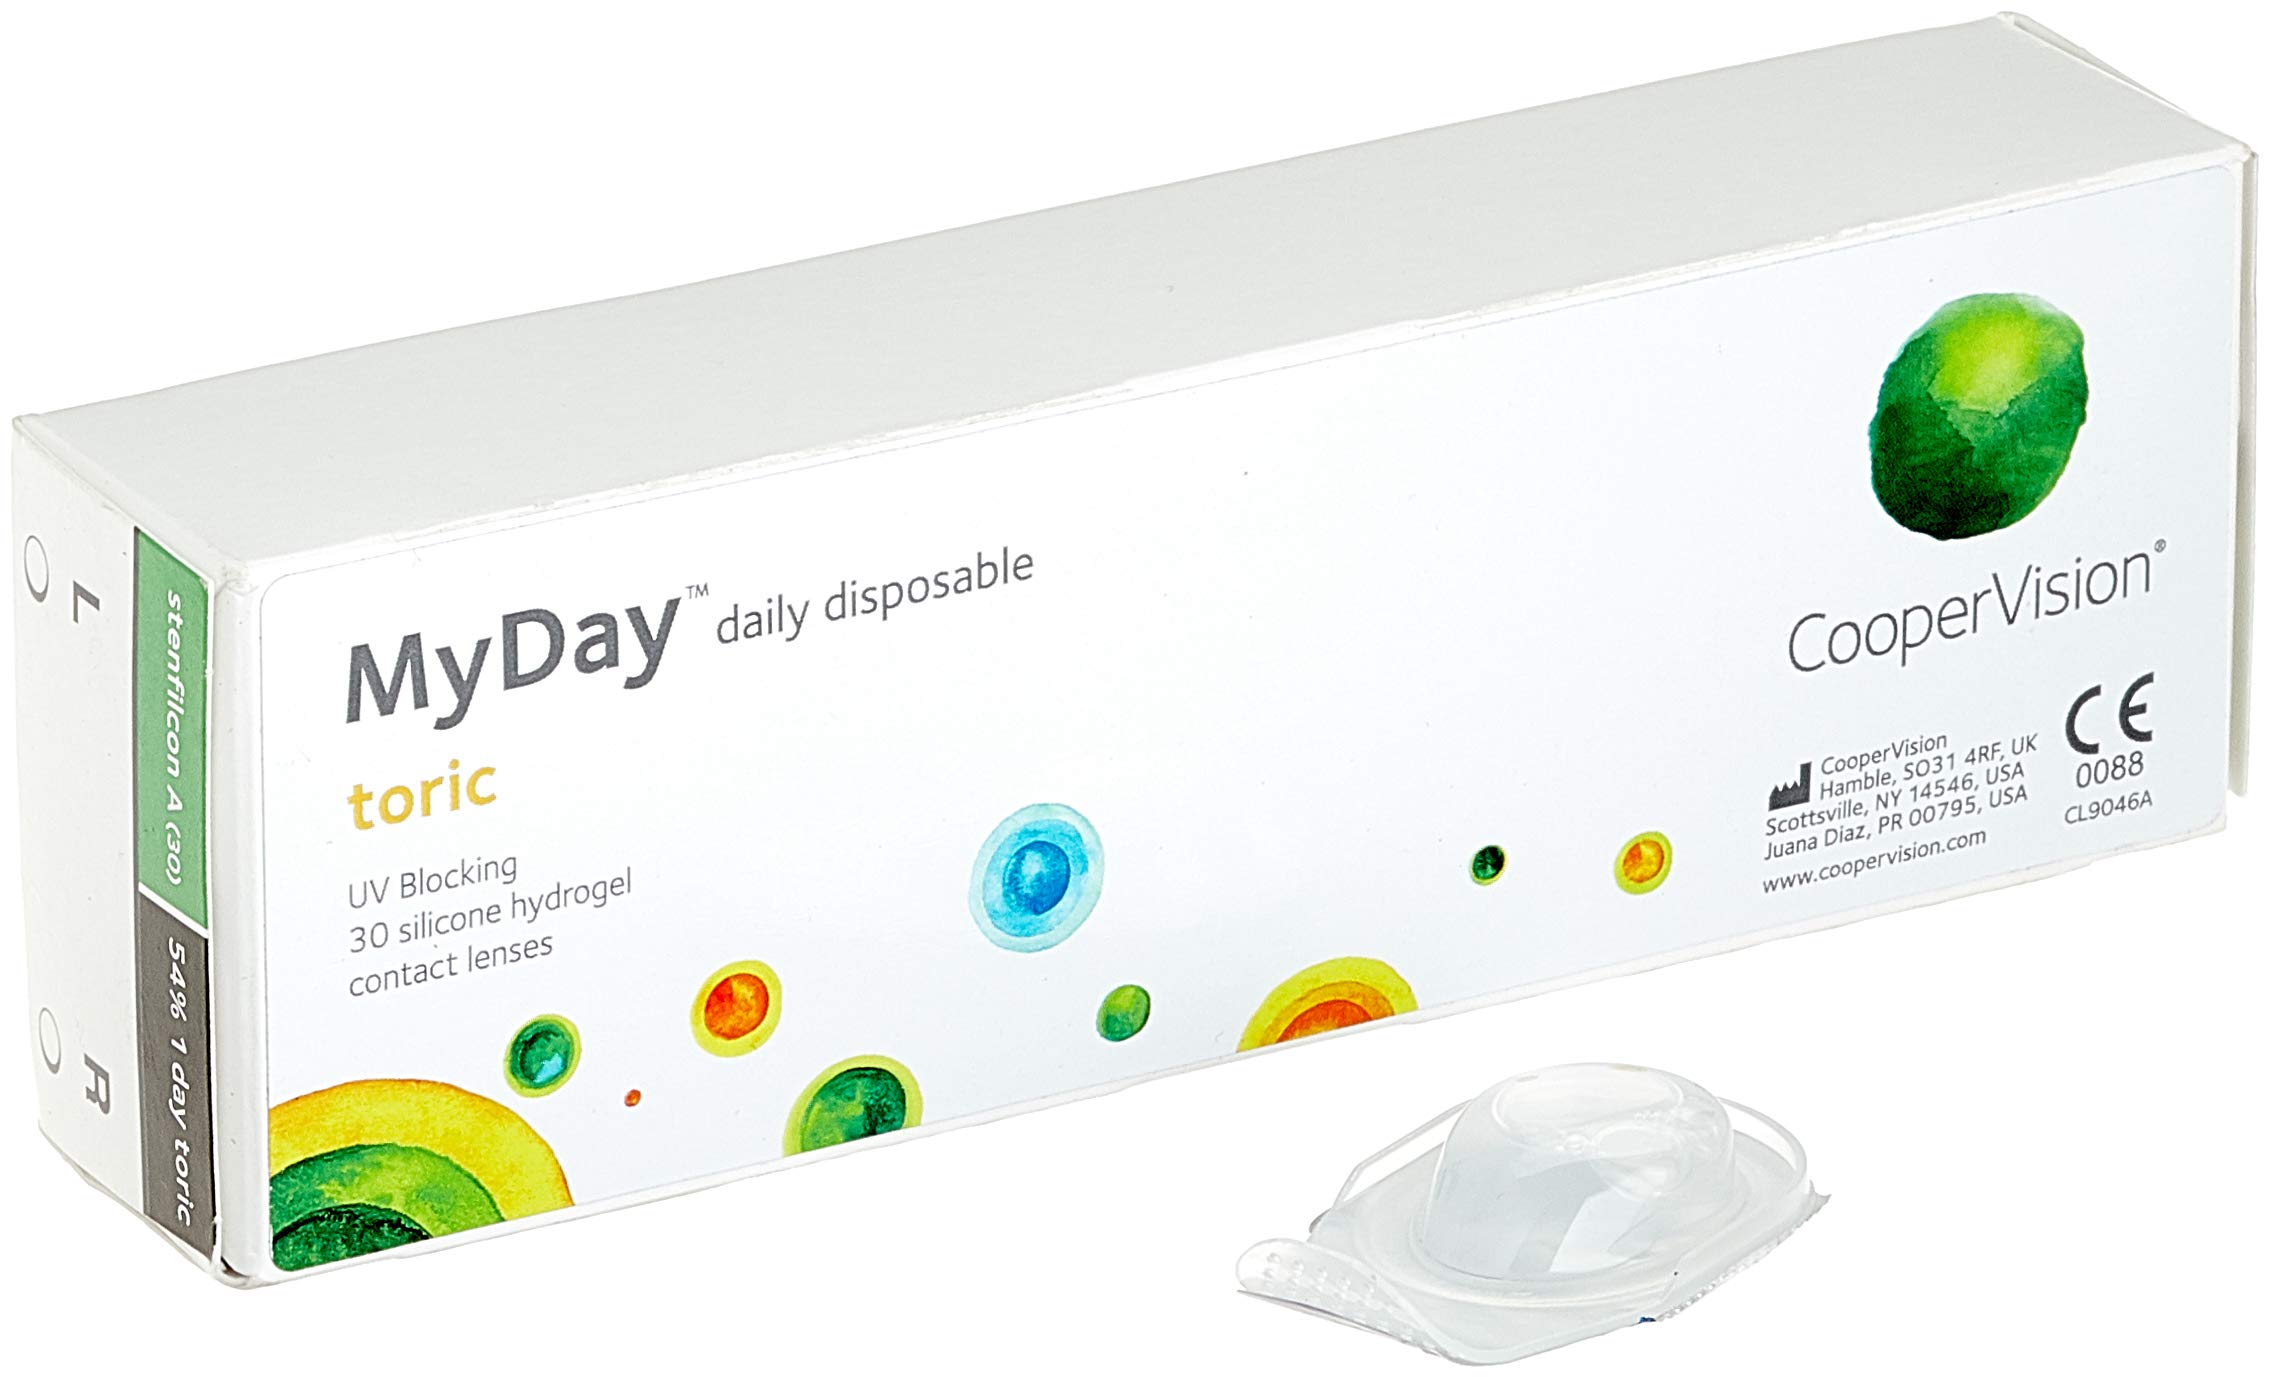 MYDAY Daily disposable Torisch Tageslinsen weich, 30 Stück / BC 8.6 mm / Dia 14.5 mm / CYL -1,25 / ACHSE 110 / -8.5 Dioptrien